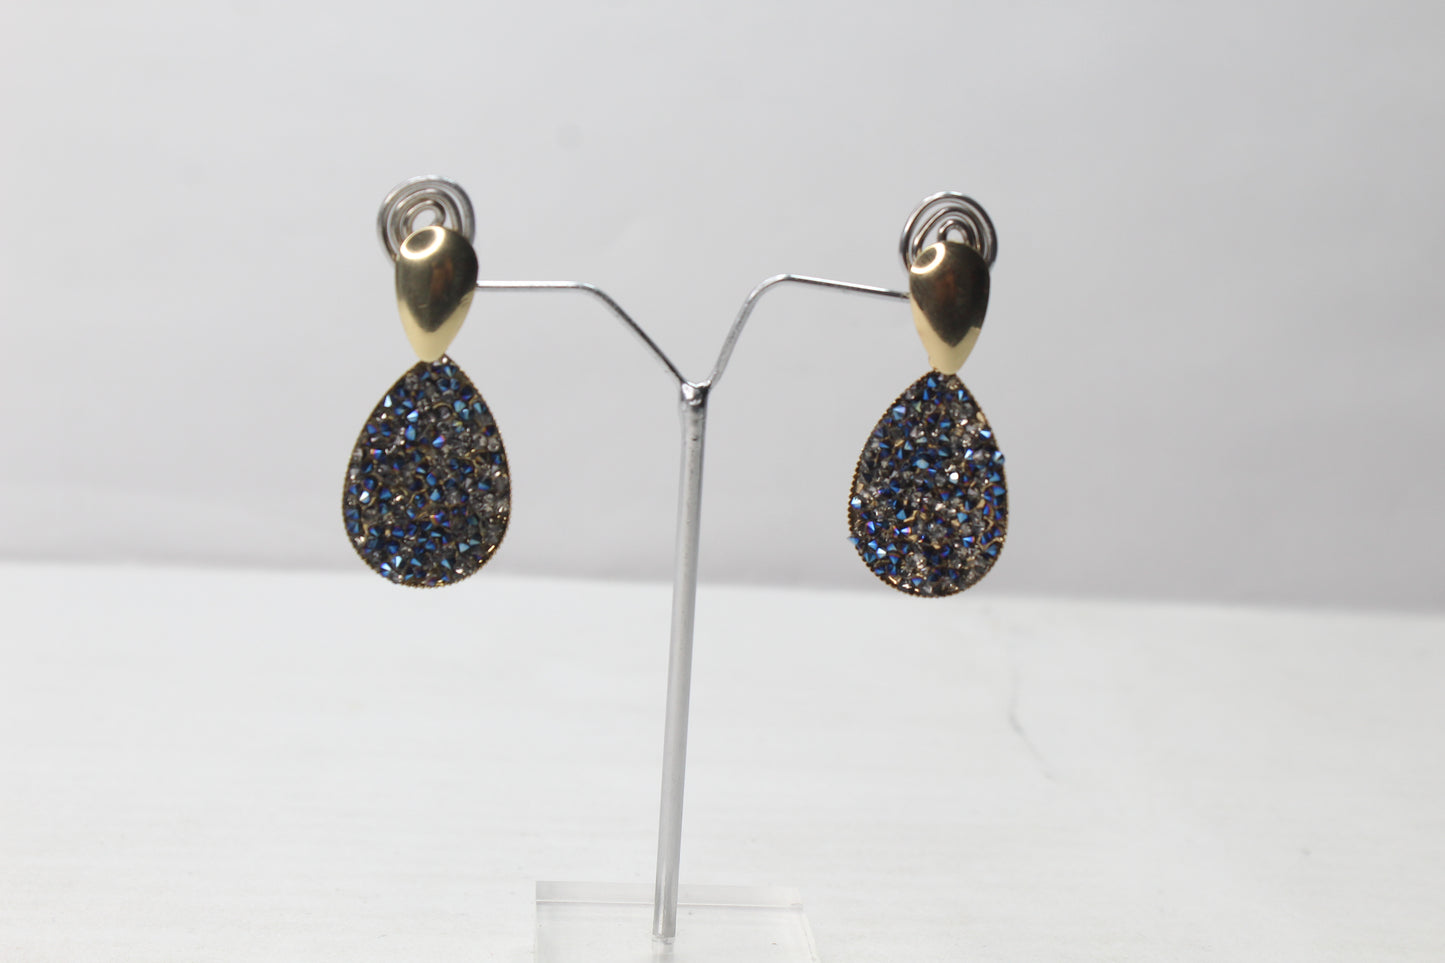 Crystal Long Earring Diamond Glitter Drop Ear Stud Earrings